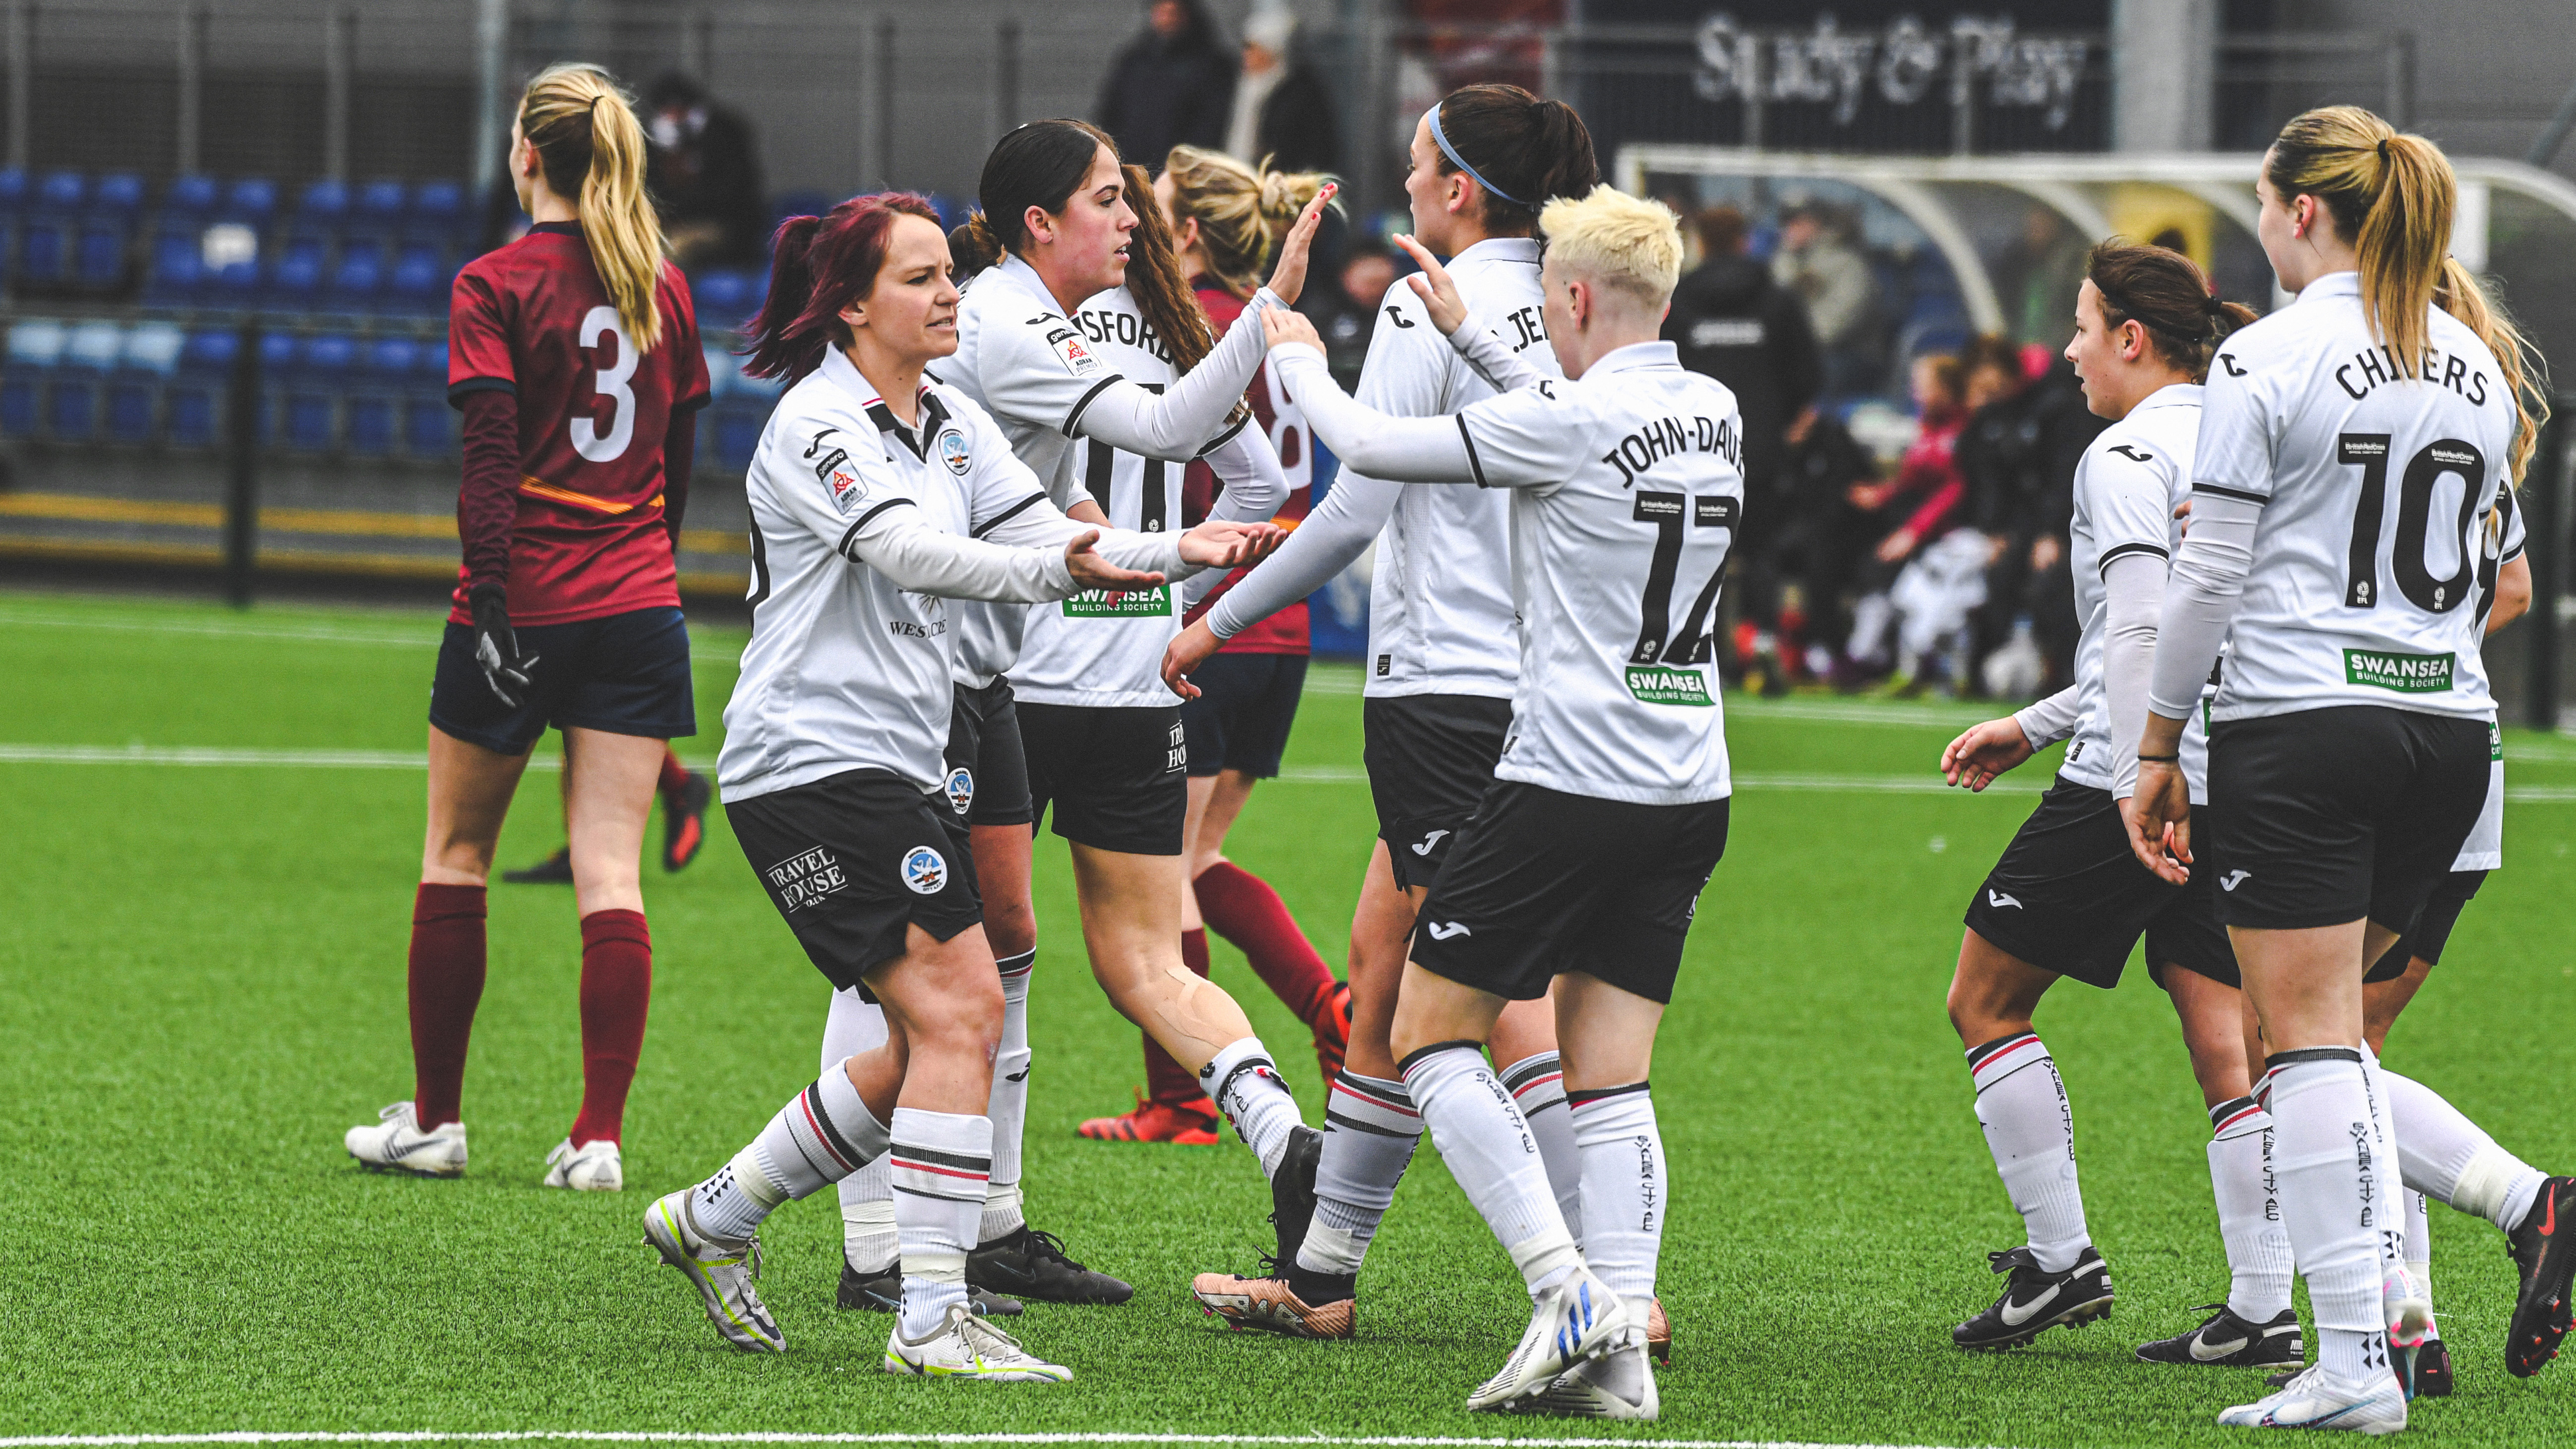 Swansea City Ladies celebrate against Cardiff Met Women